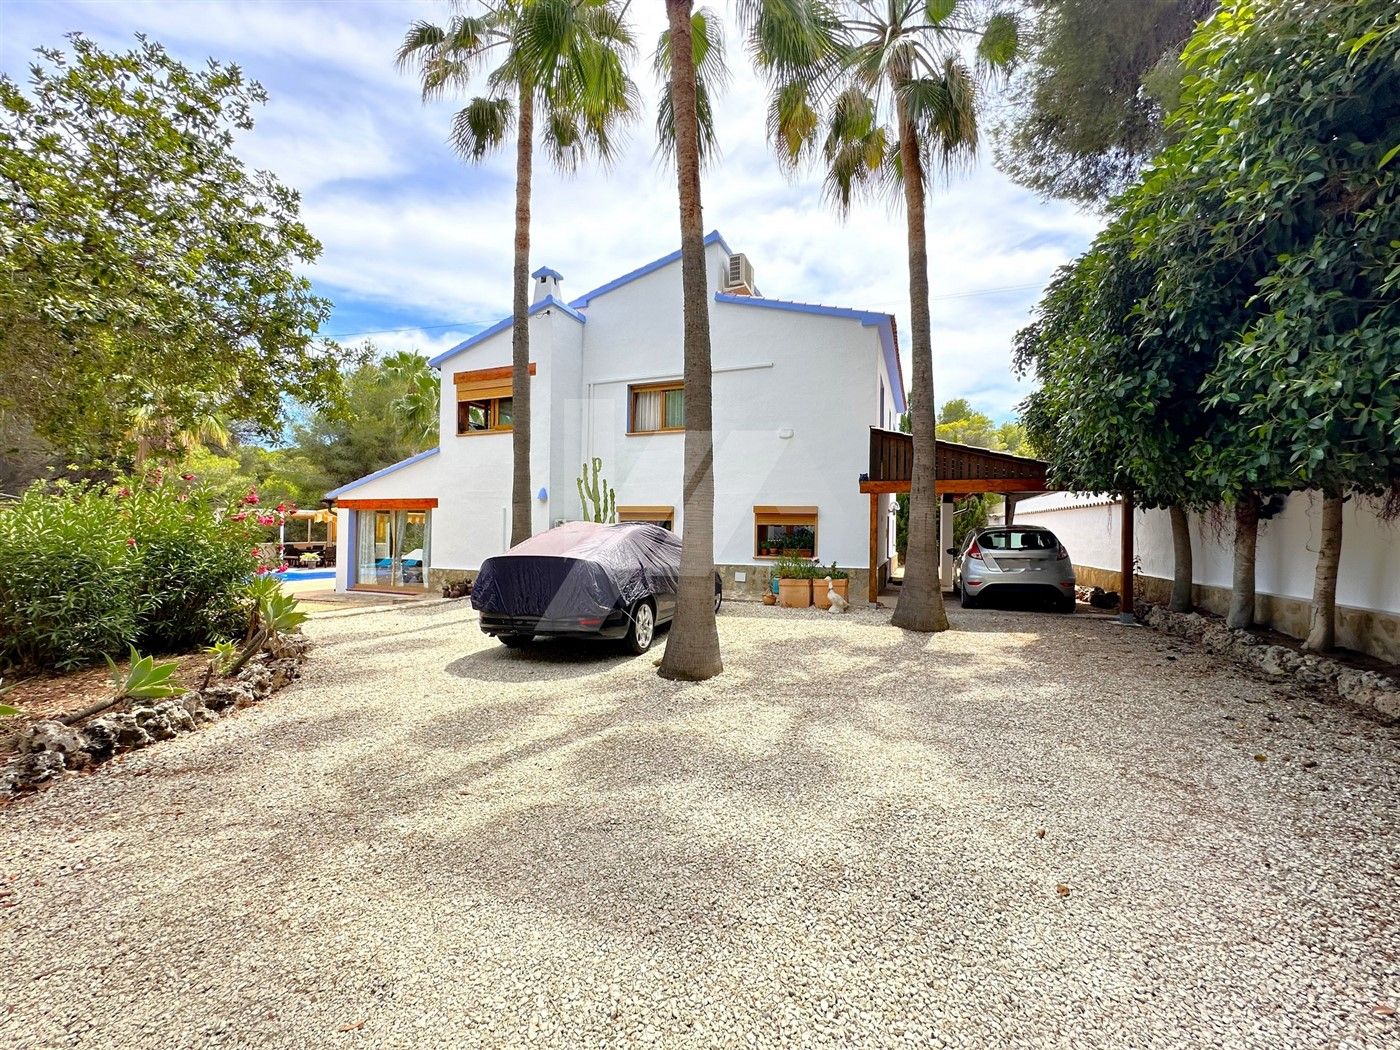 Villa for sale in La Cometa, Moraira, Costa Blanca.